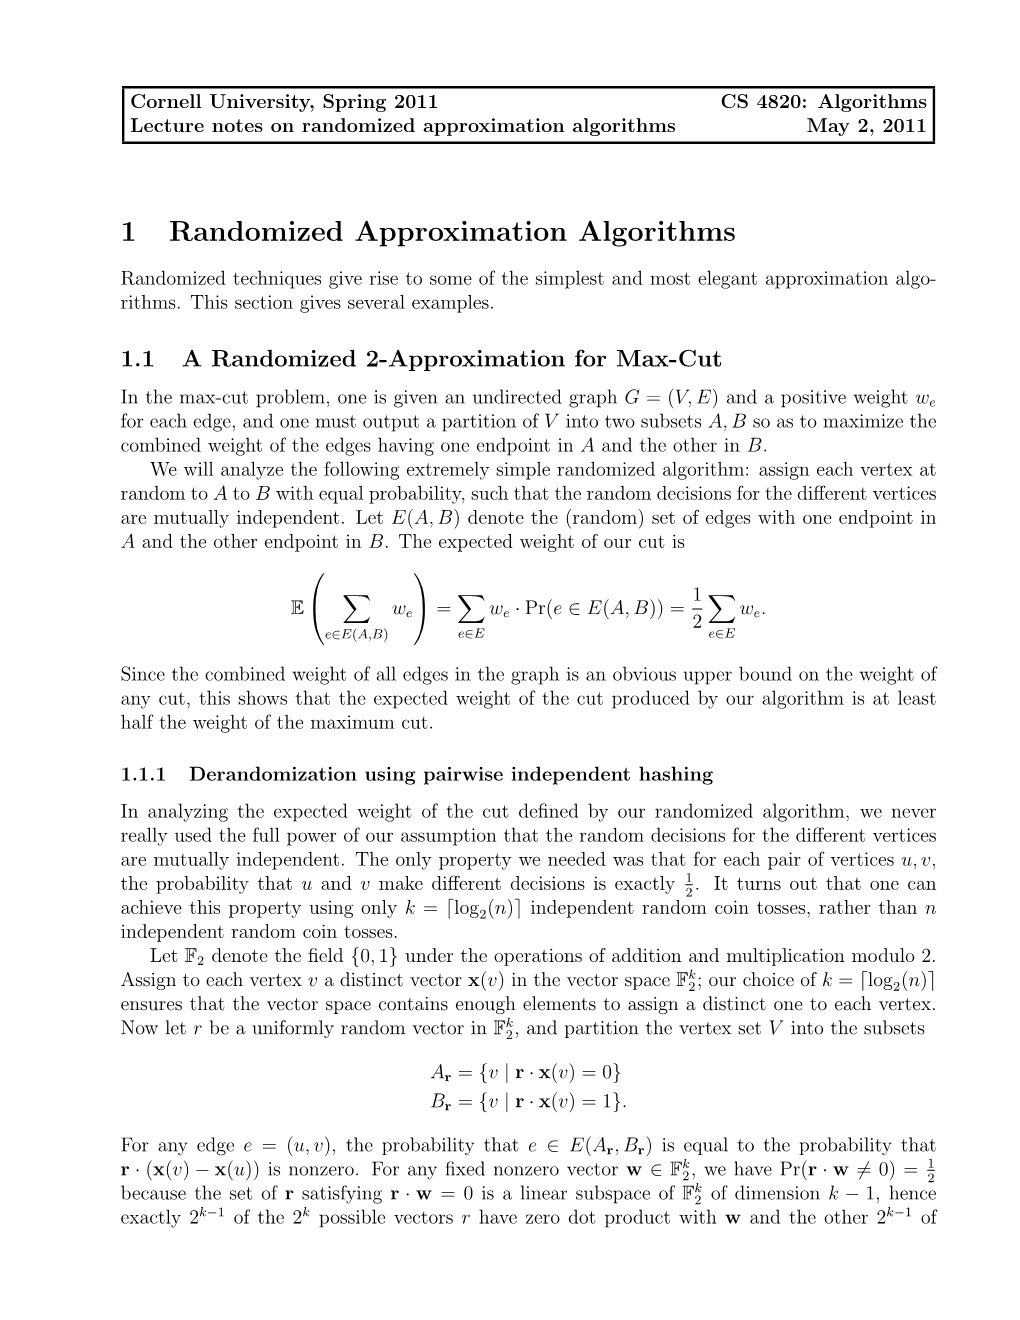 1 Randomized Approximation Algorithms